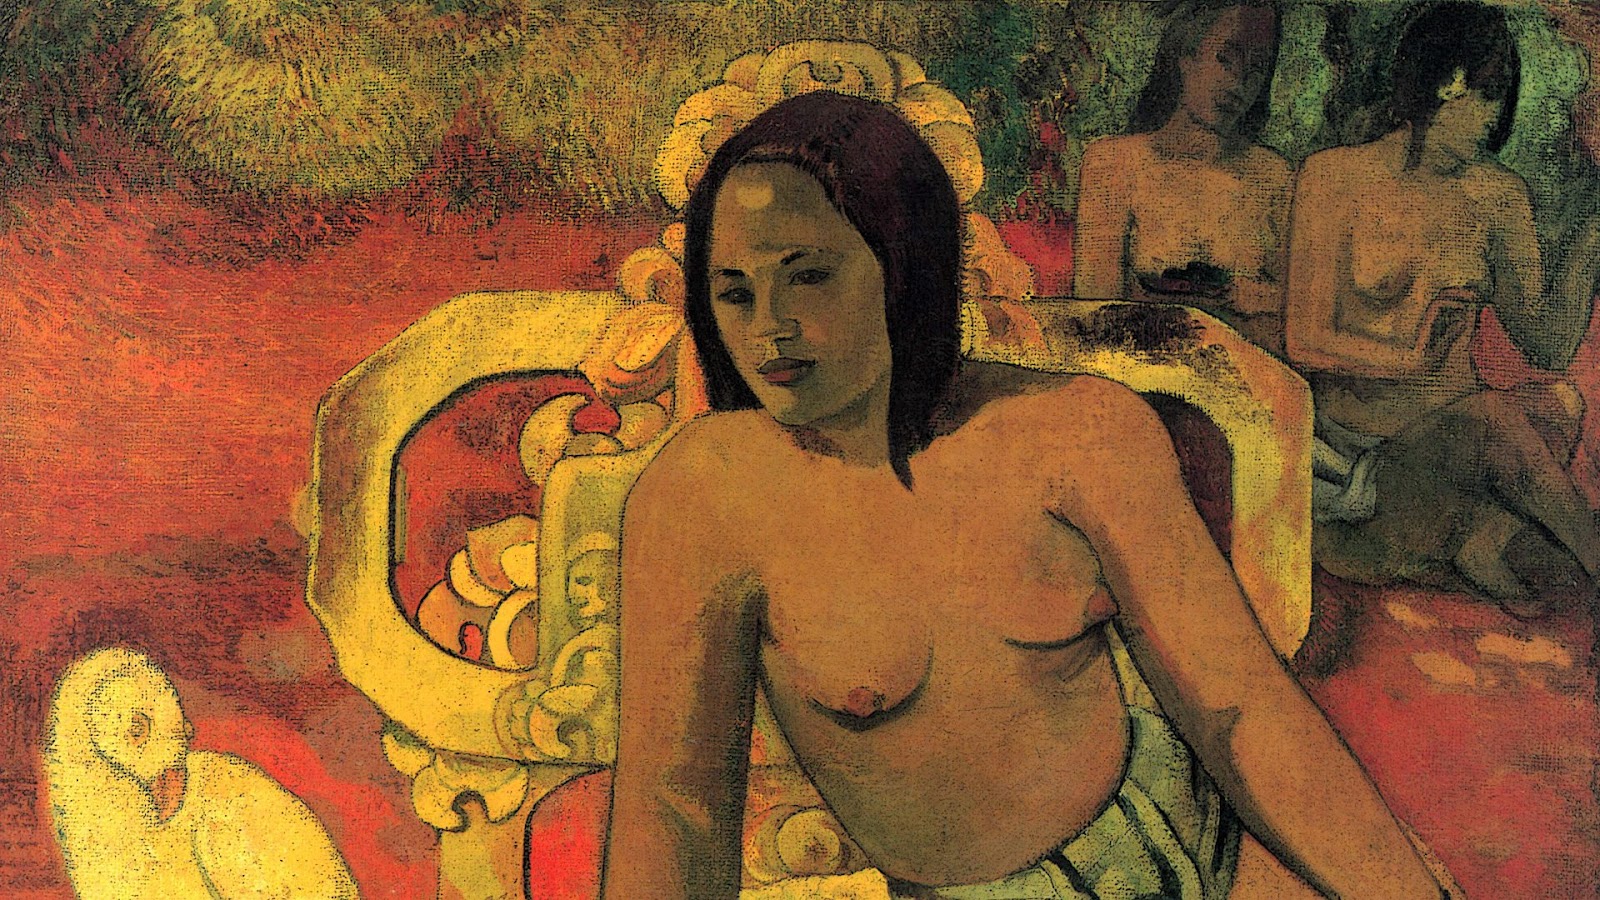 Paul+Gauguin-1848-1903 (408).jpg